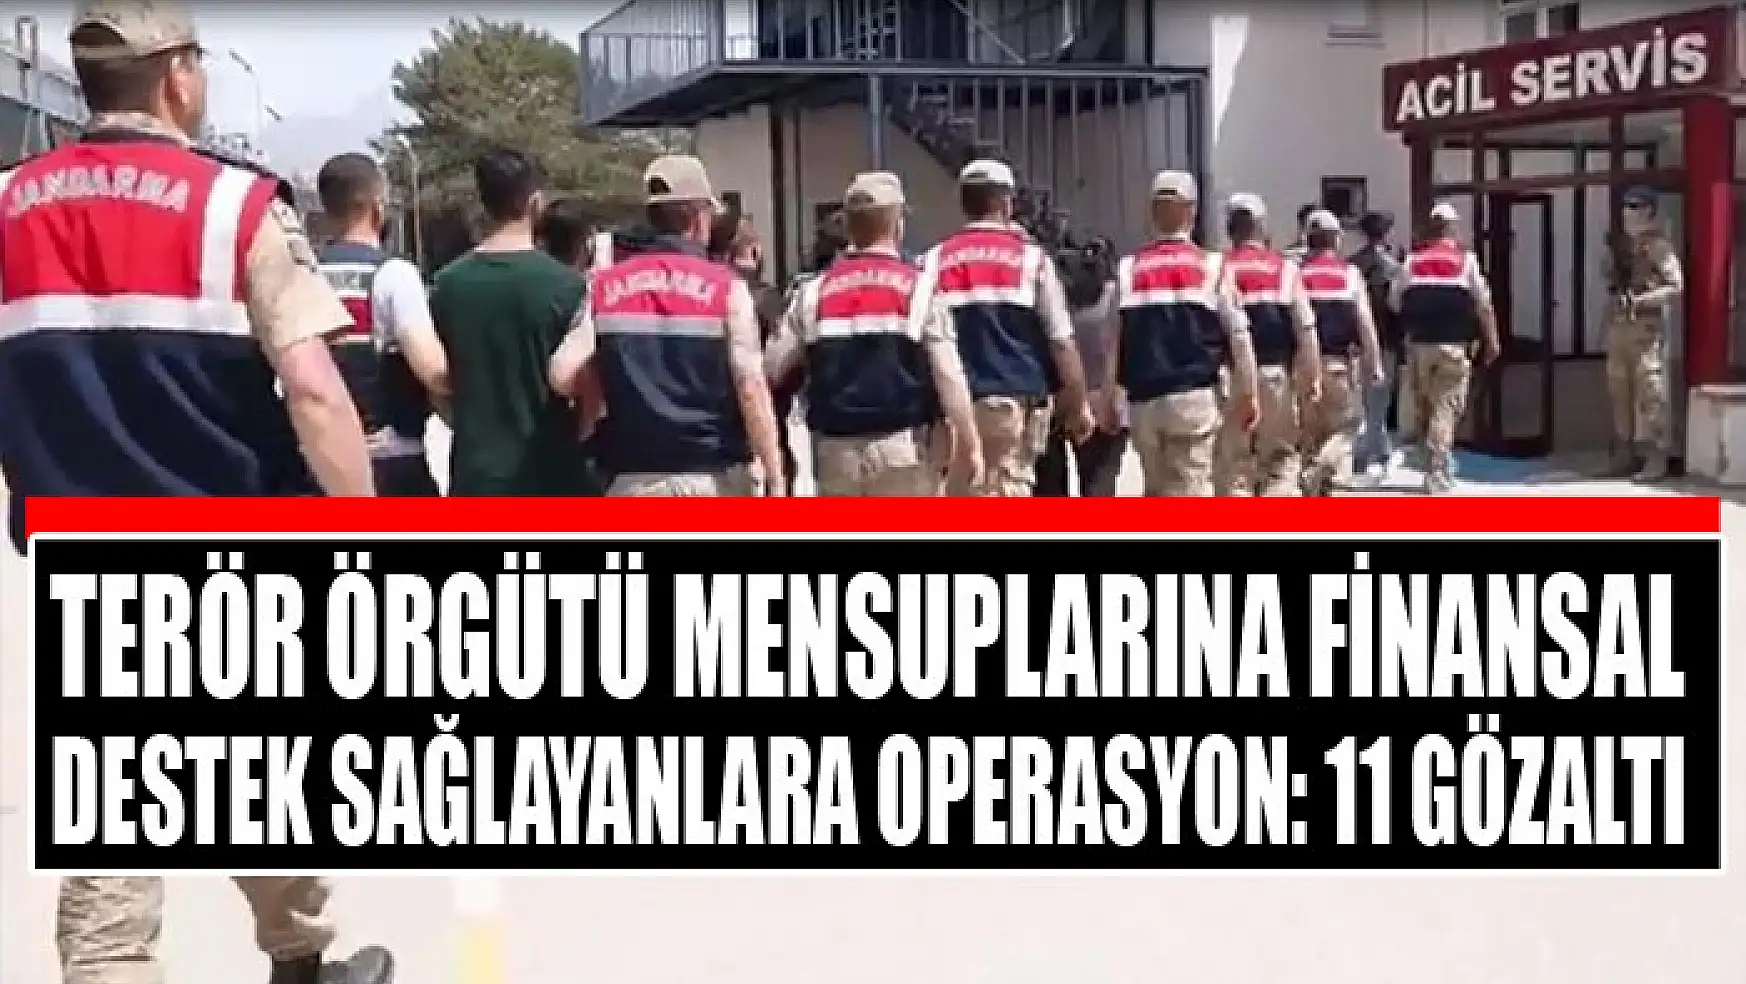 Terör örgütü mensuplarına finansal destek sağlayanlara operasyon: 11 gözaltı